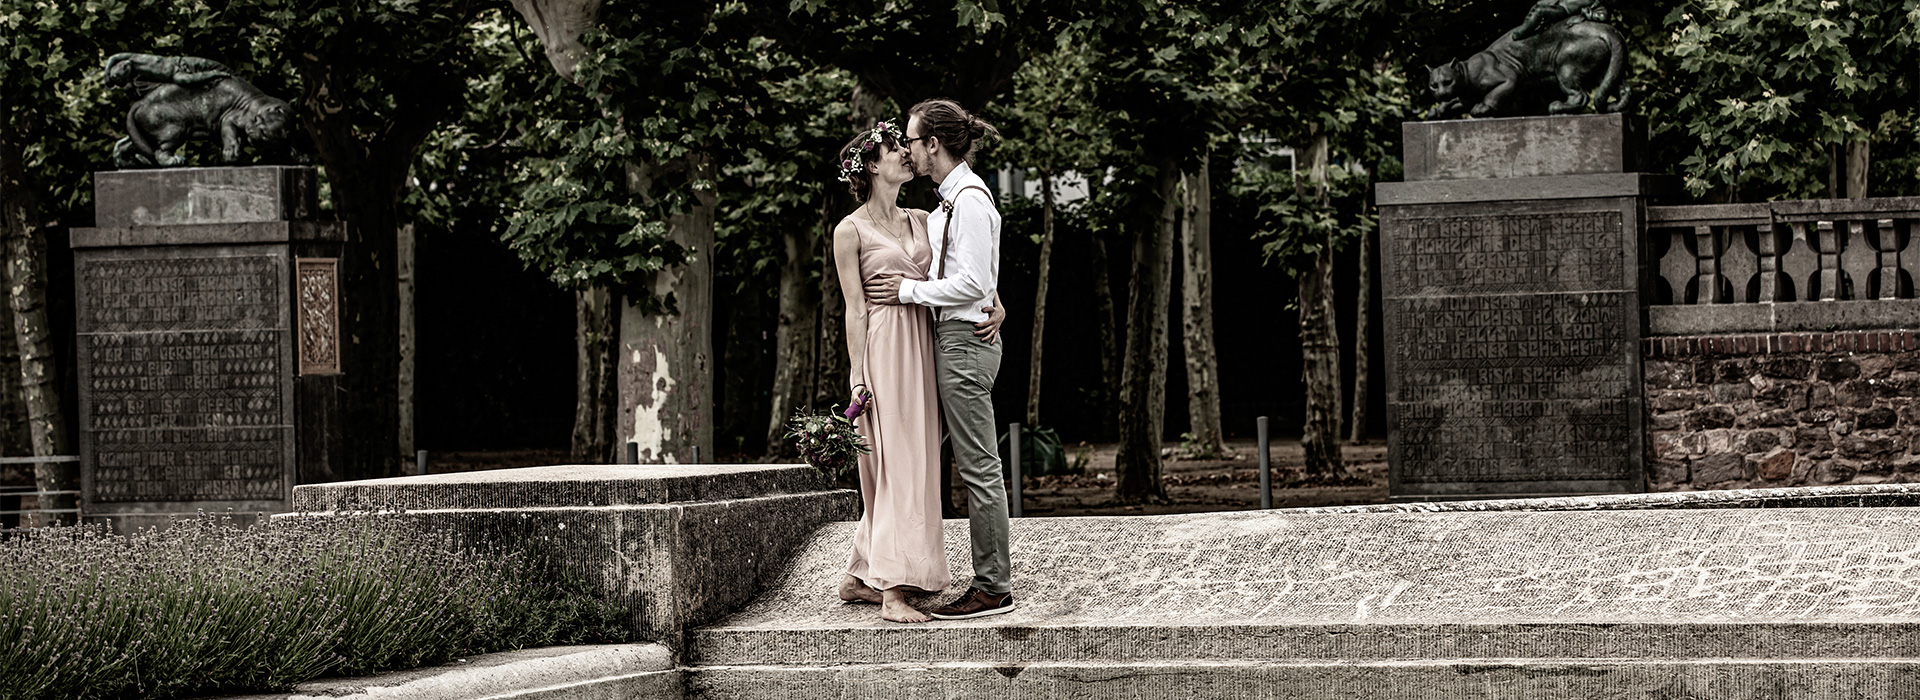 Hochzeitsfoto von Anna & Philipp auf der Mathildenhöhe in Darmstadt